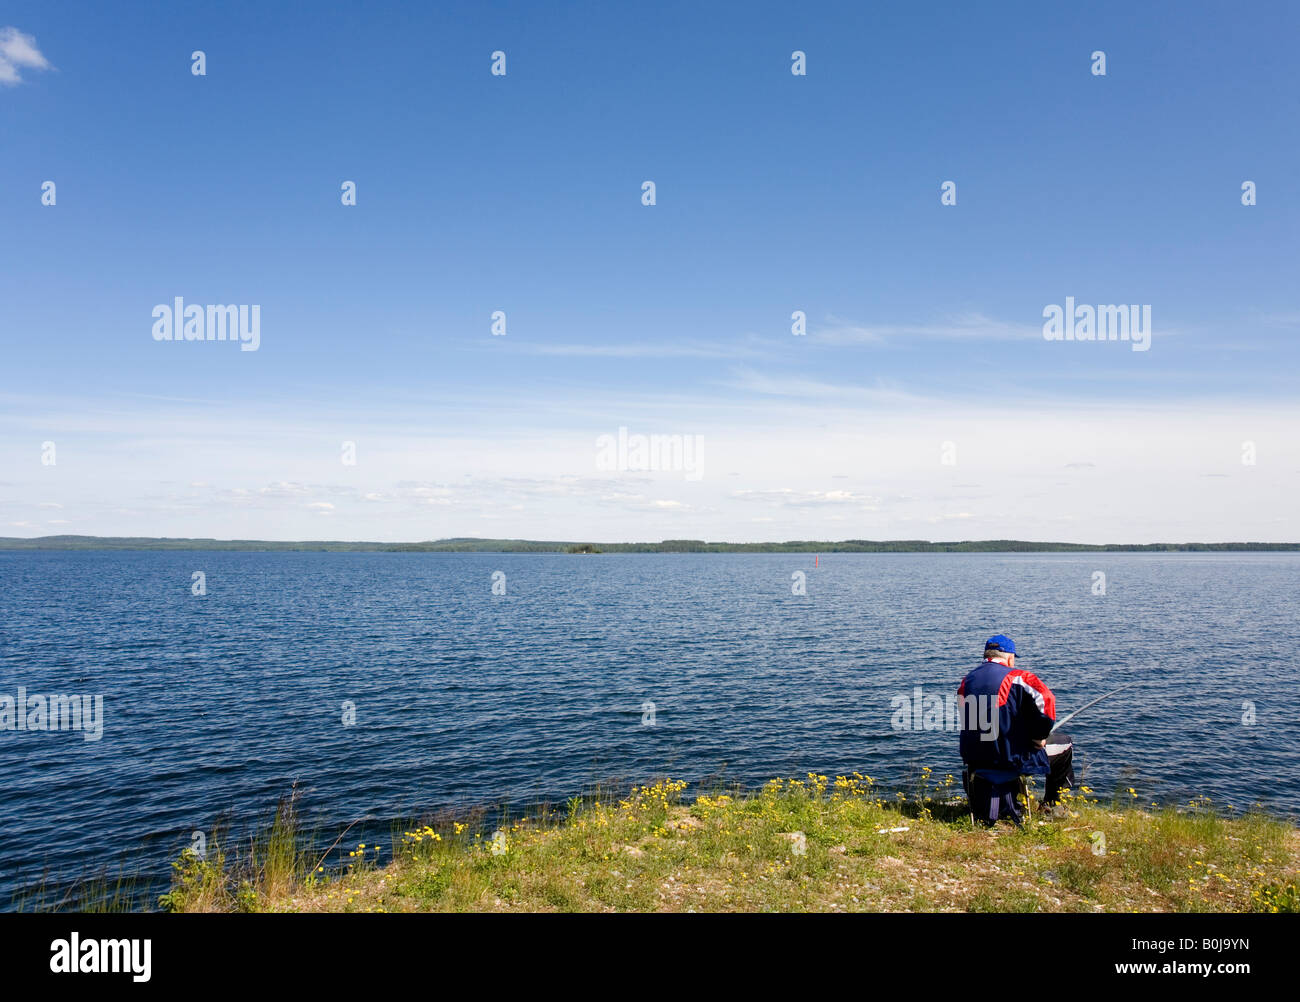 Angler at lake shore, Finland Stock Photo